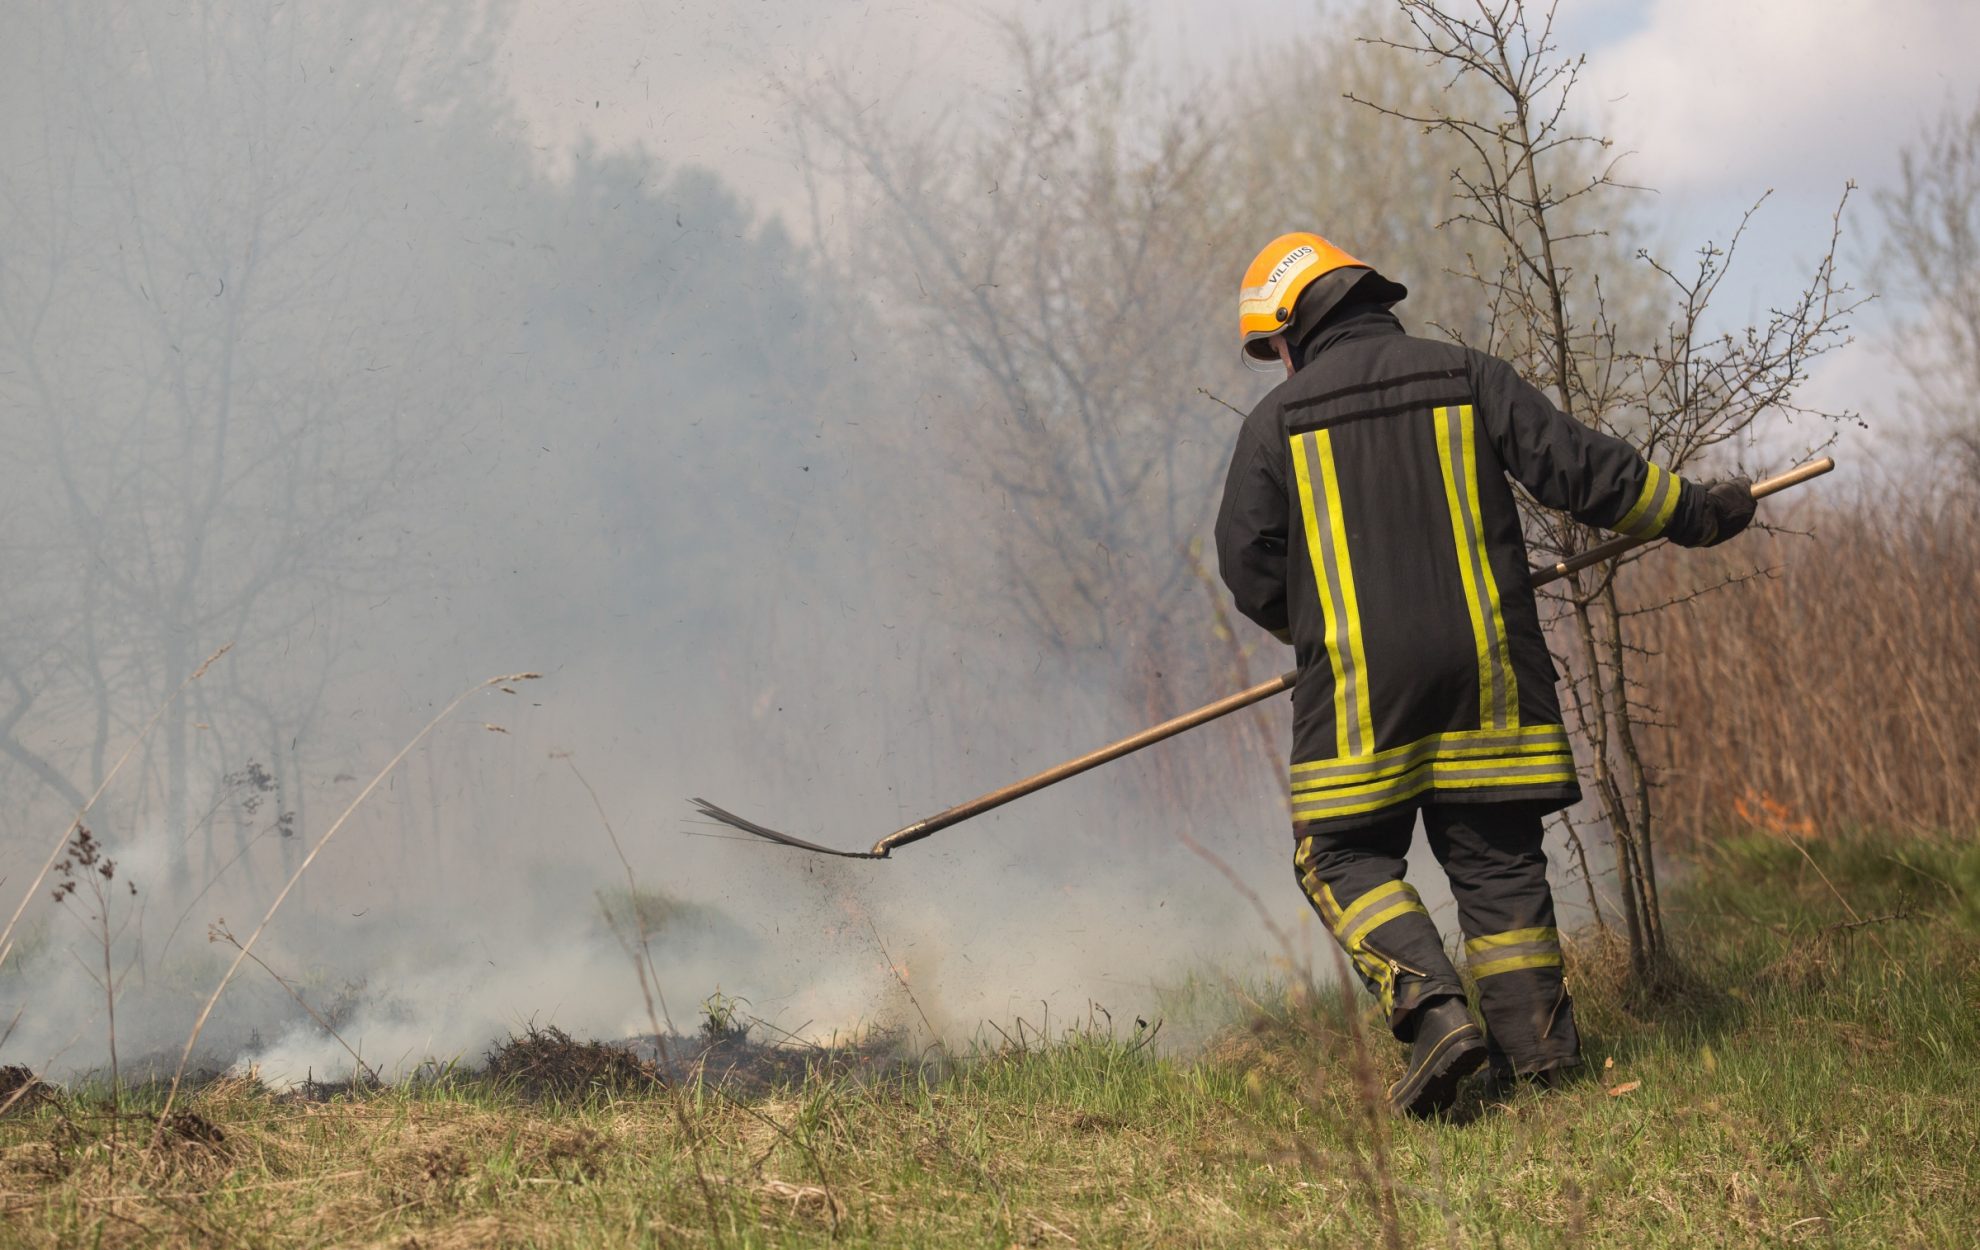 Nuo penktadienio ryto iki sekmadienio vakaro Panevėžio apskrityje gauta net 14 pranešimų apie degančią sausą žolę.